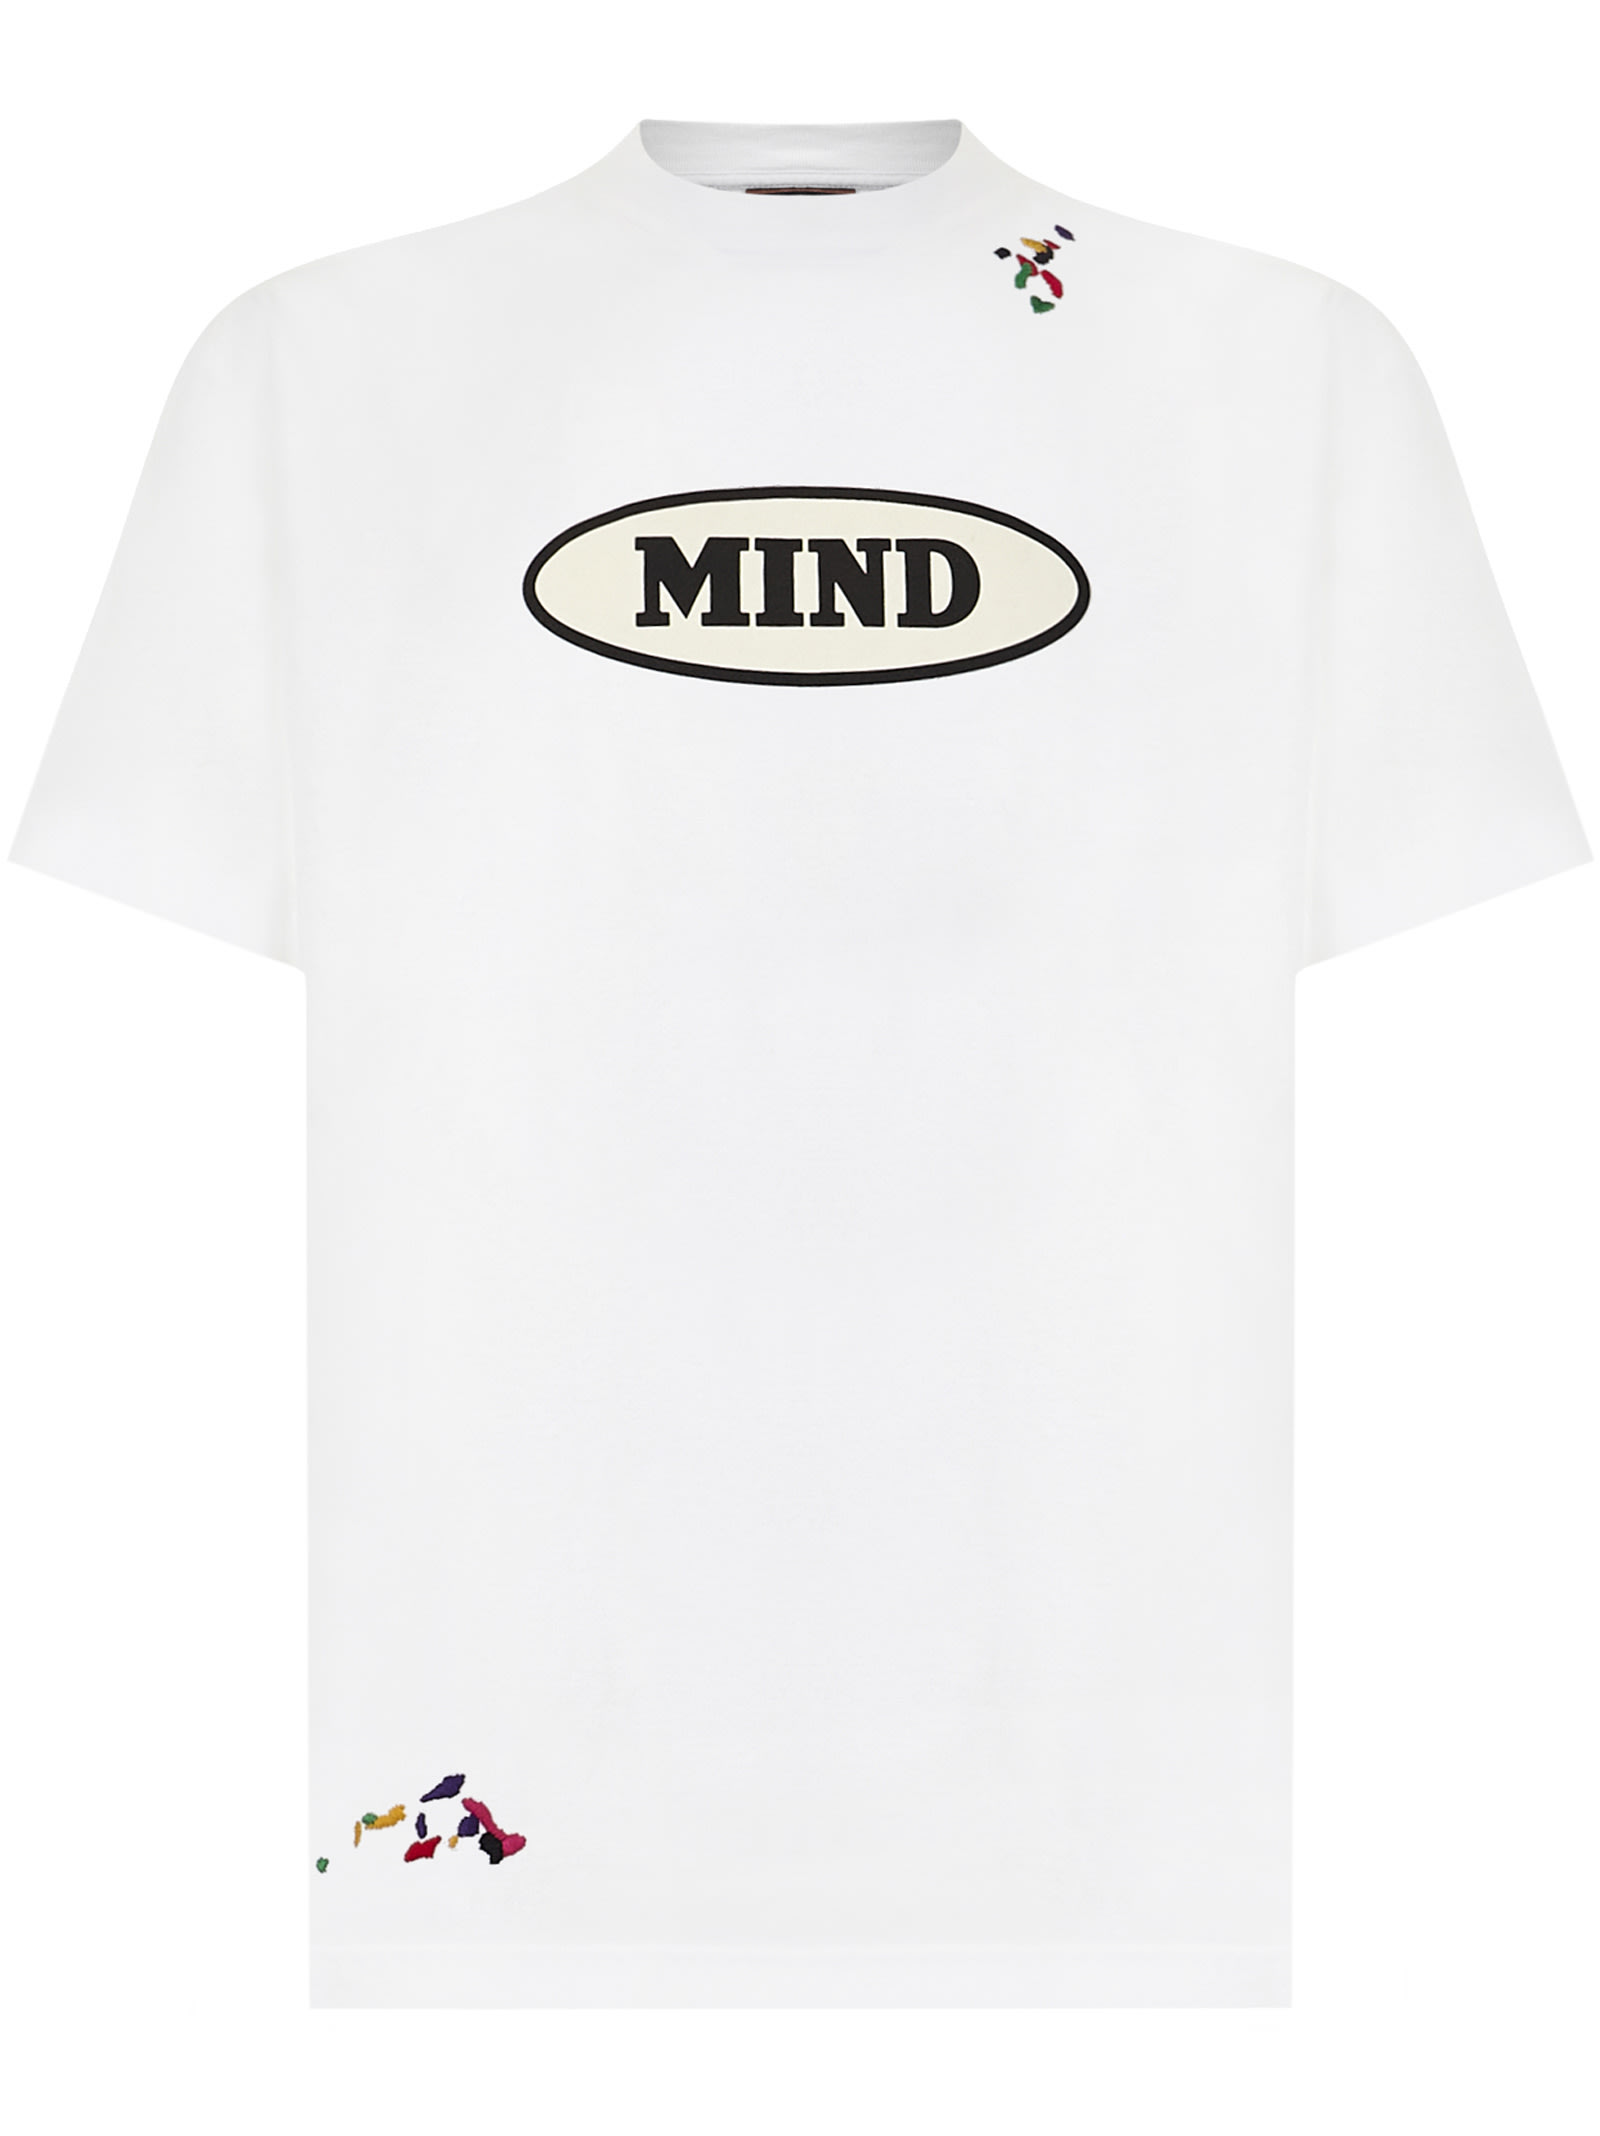 Palm Angels X Missoni Mind T-shirt